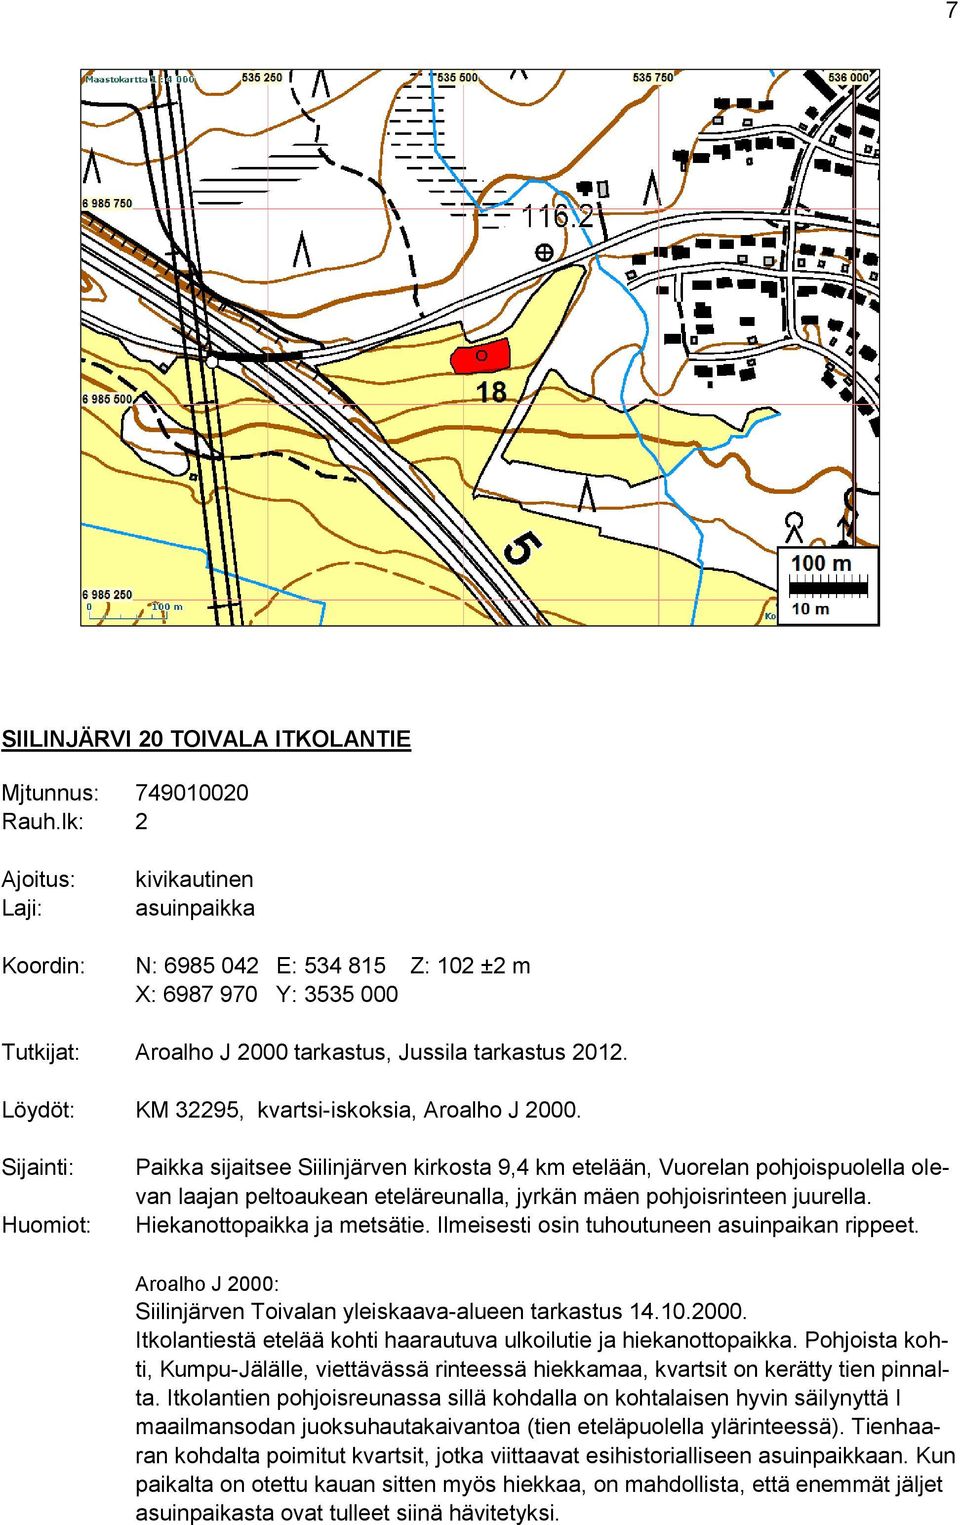 Löydöt: KM 32295, kvartsi-iskoksia, Aroalho J 2000.